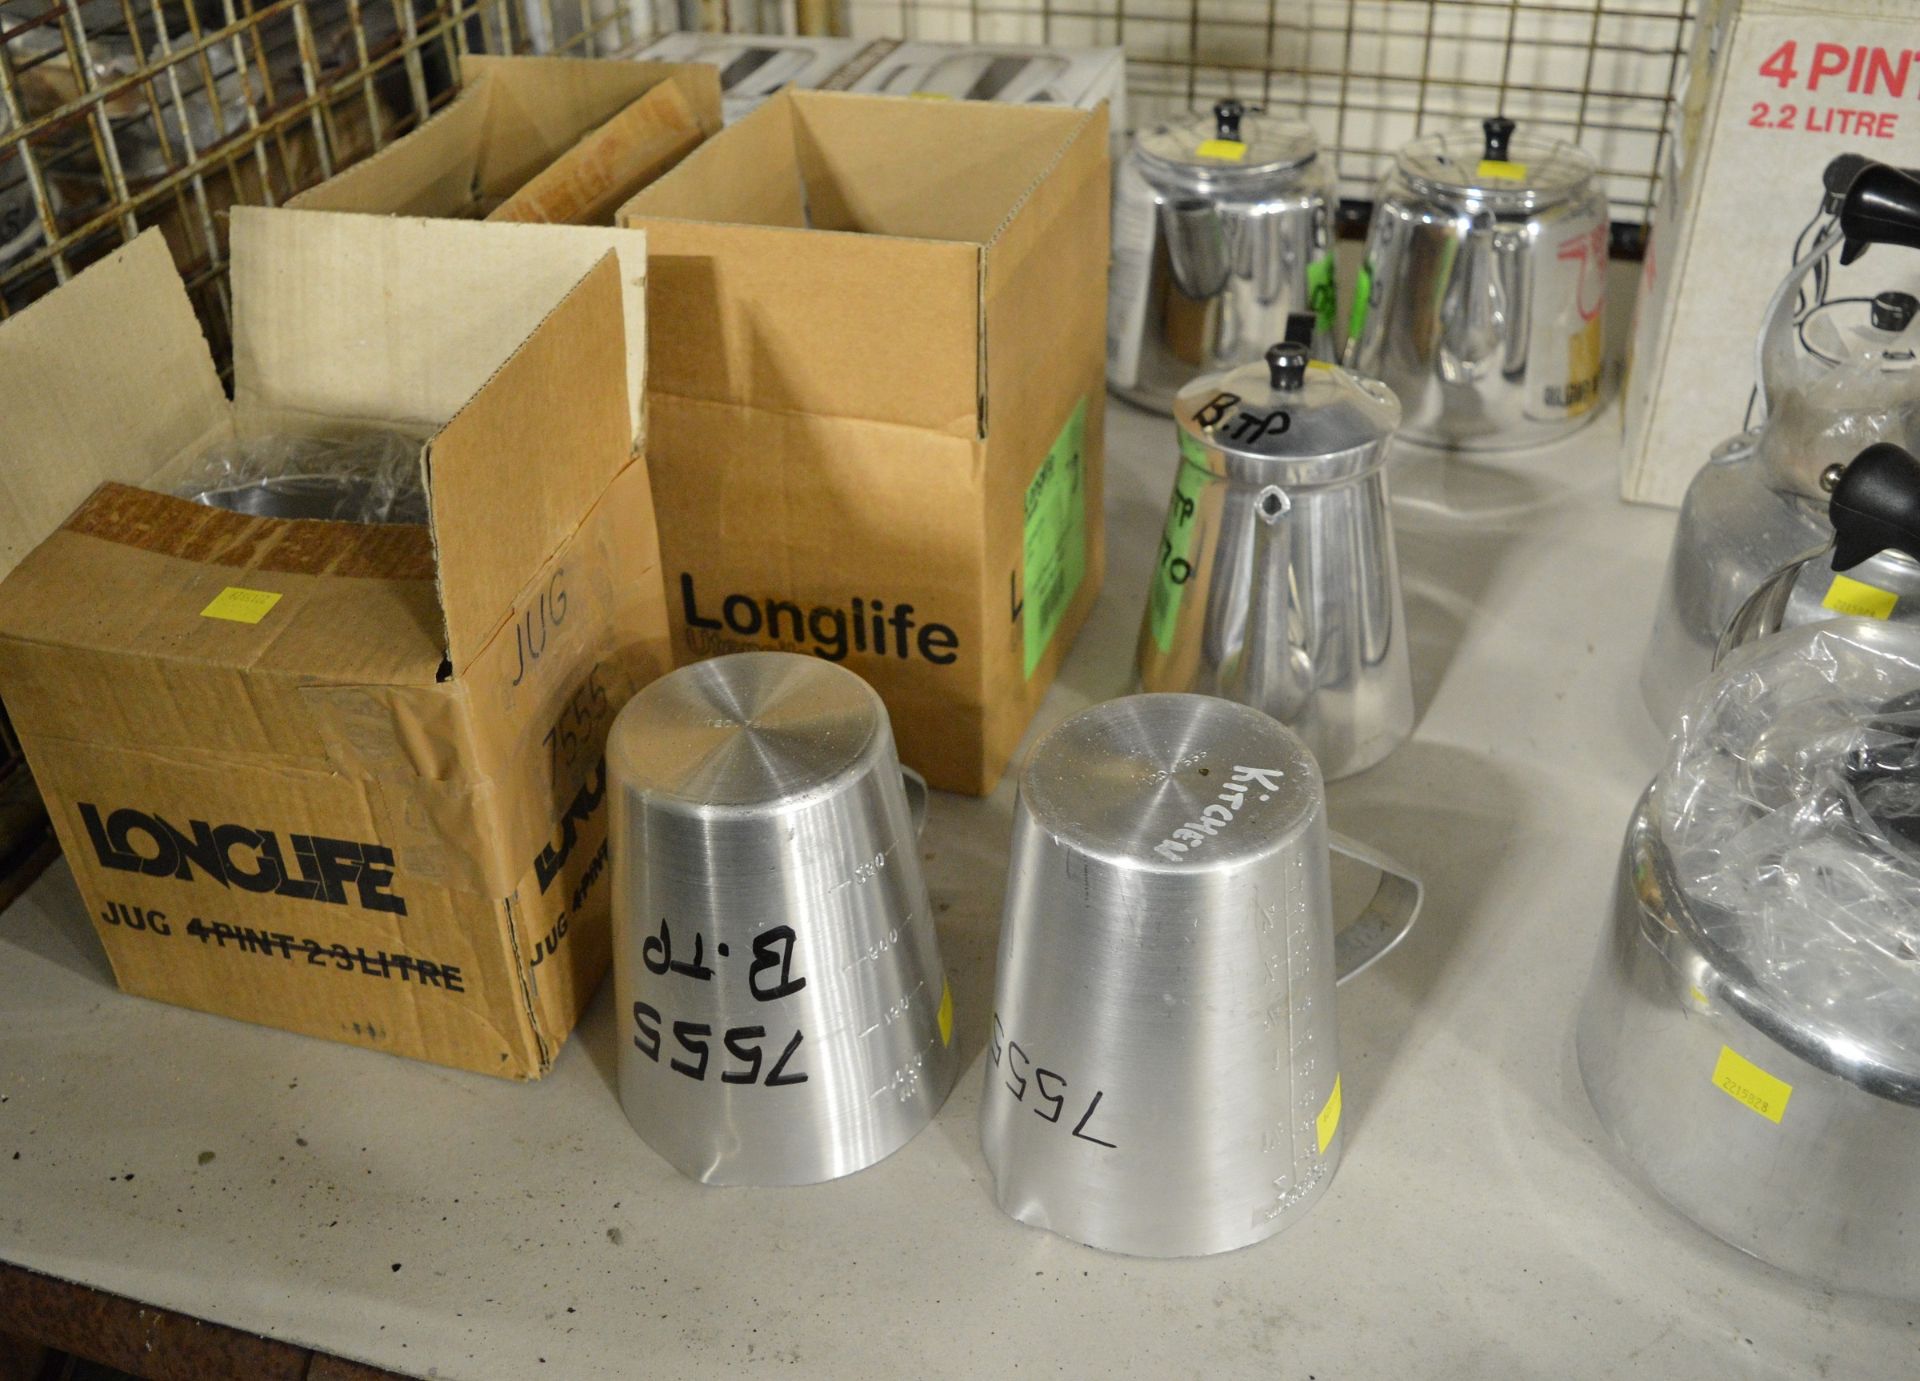 6x Aluminium 4pt Kettles, 3x Aluminium Measure Jugs 2pt, 2x Aluminium Coffee Pots 2pt, 4x - Image 2 of 3